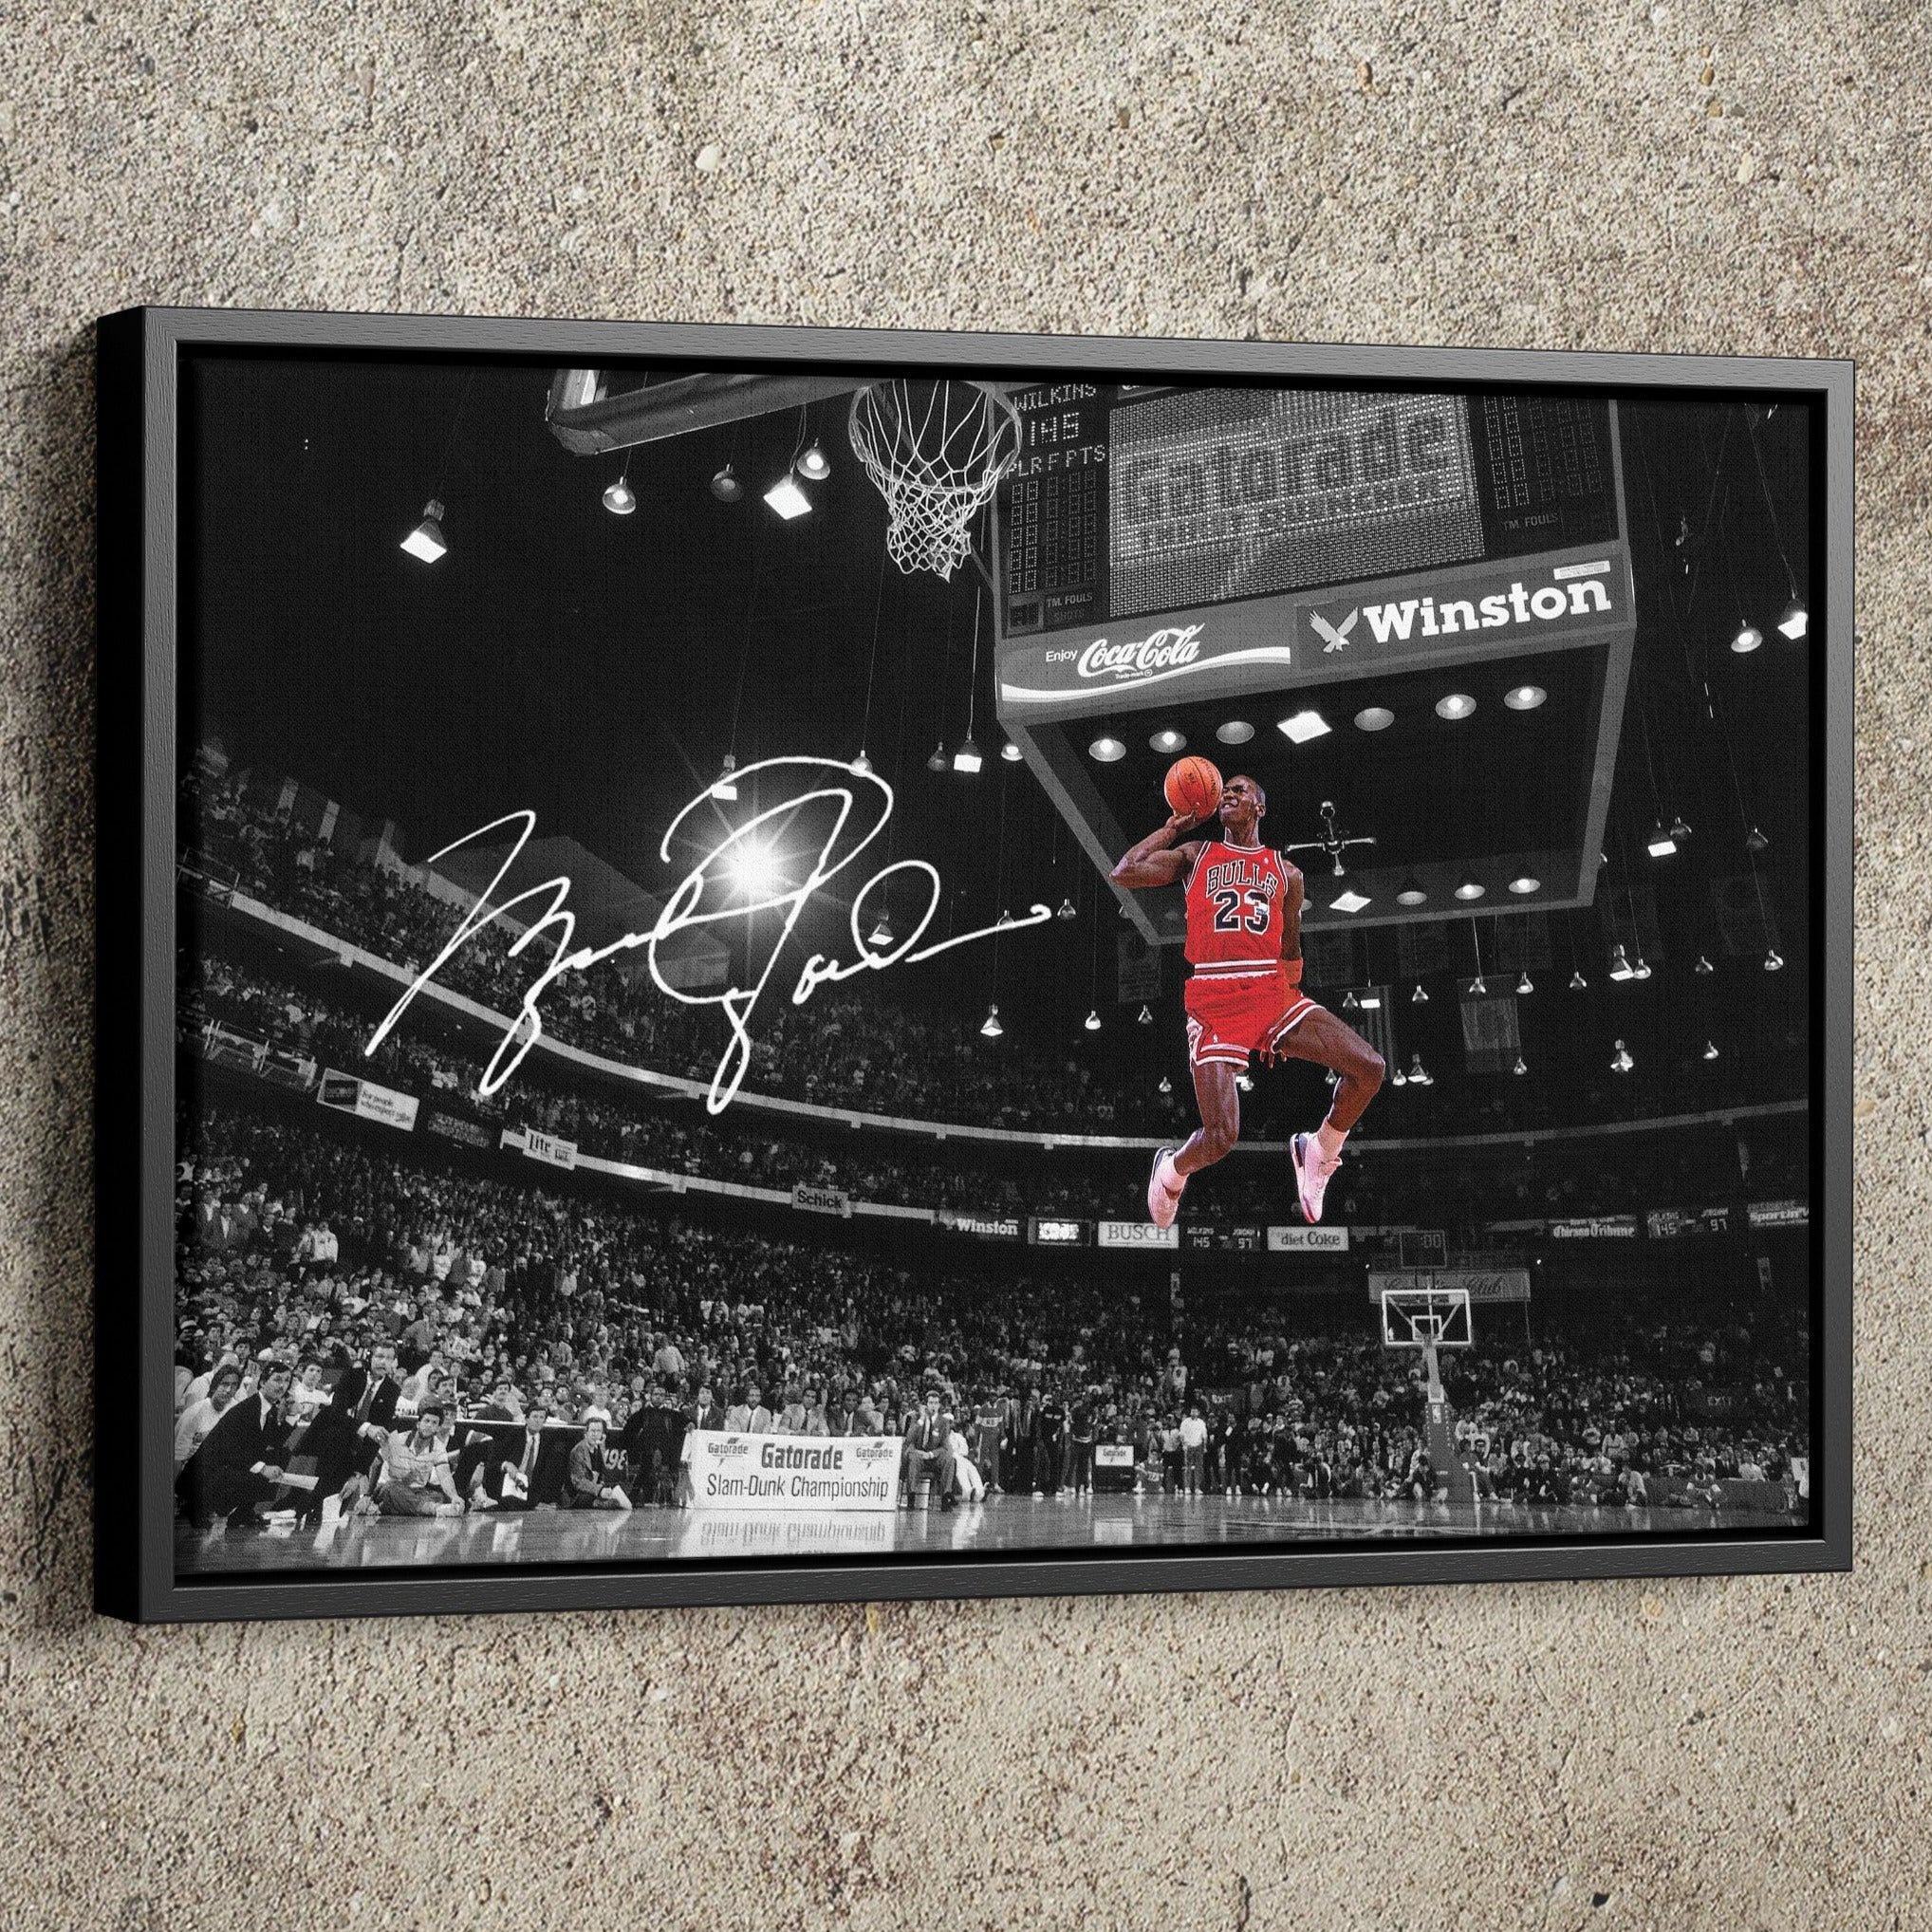 Wall sticker Autograph of Michael Jordan